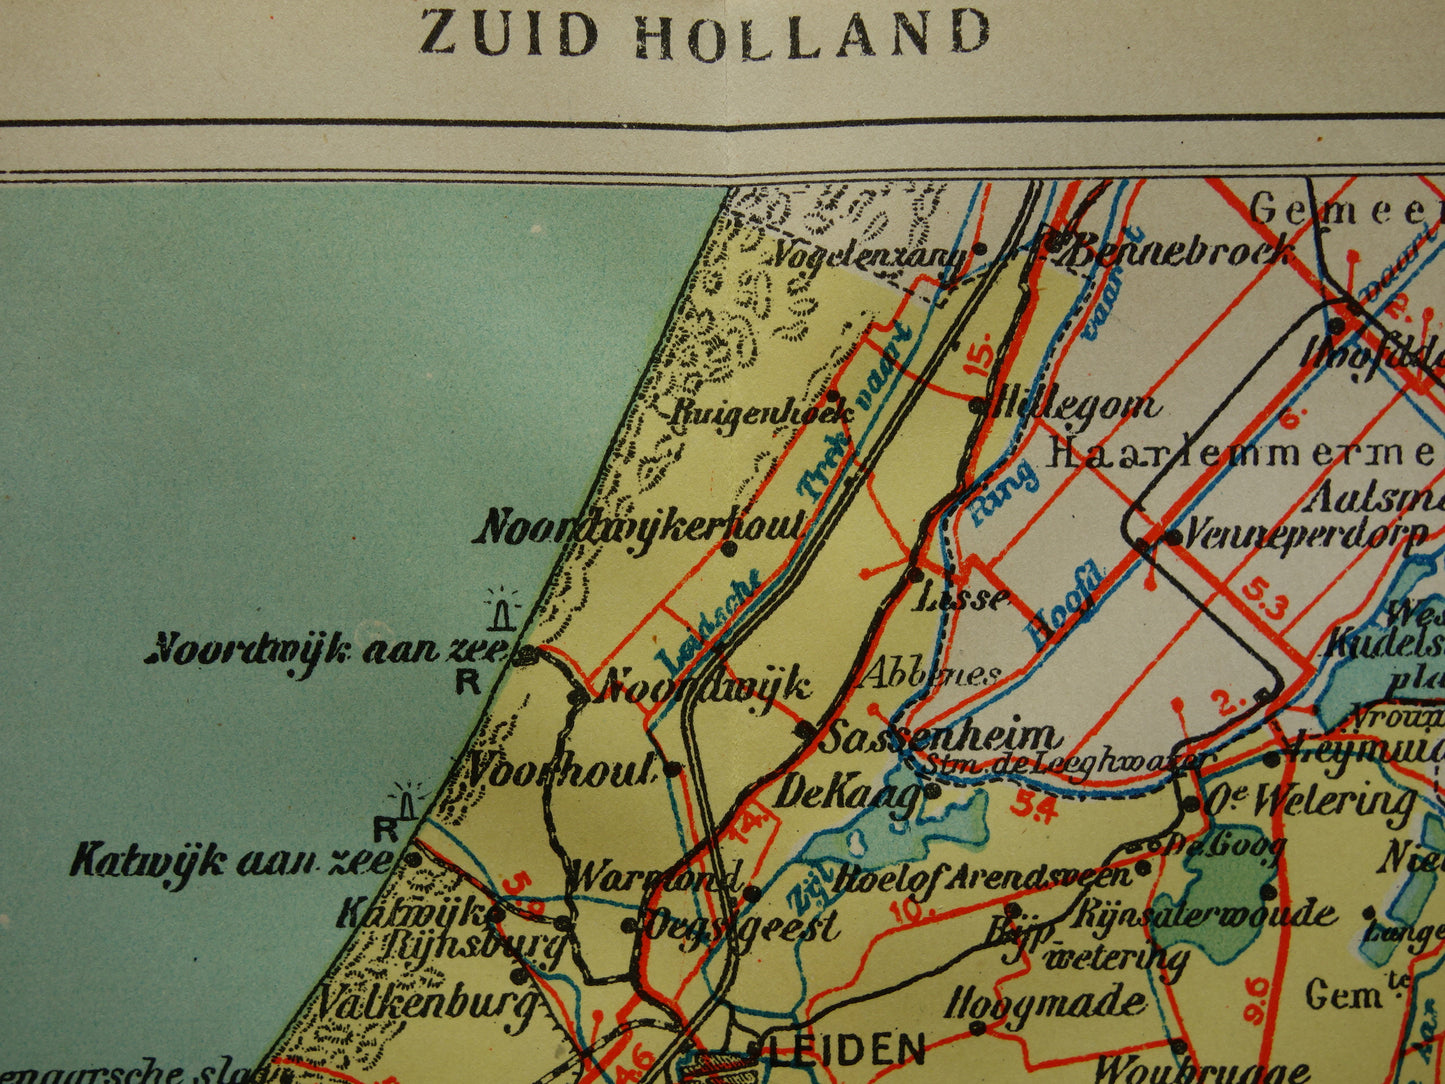 Zuid-Holland Oude landkaart van de provincie Zuid-Holland uit 1934 originele vintage historische kaart